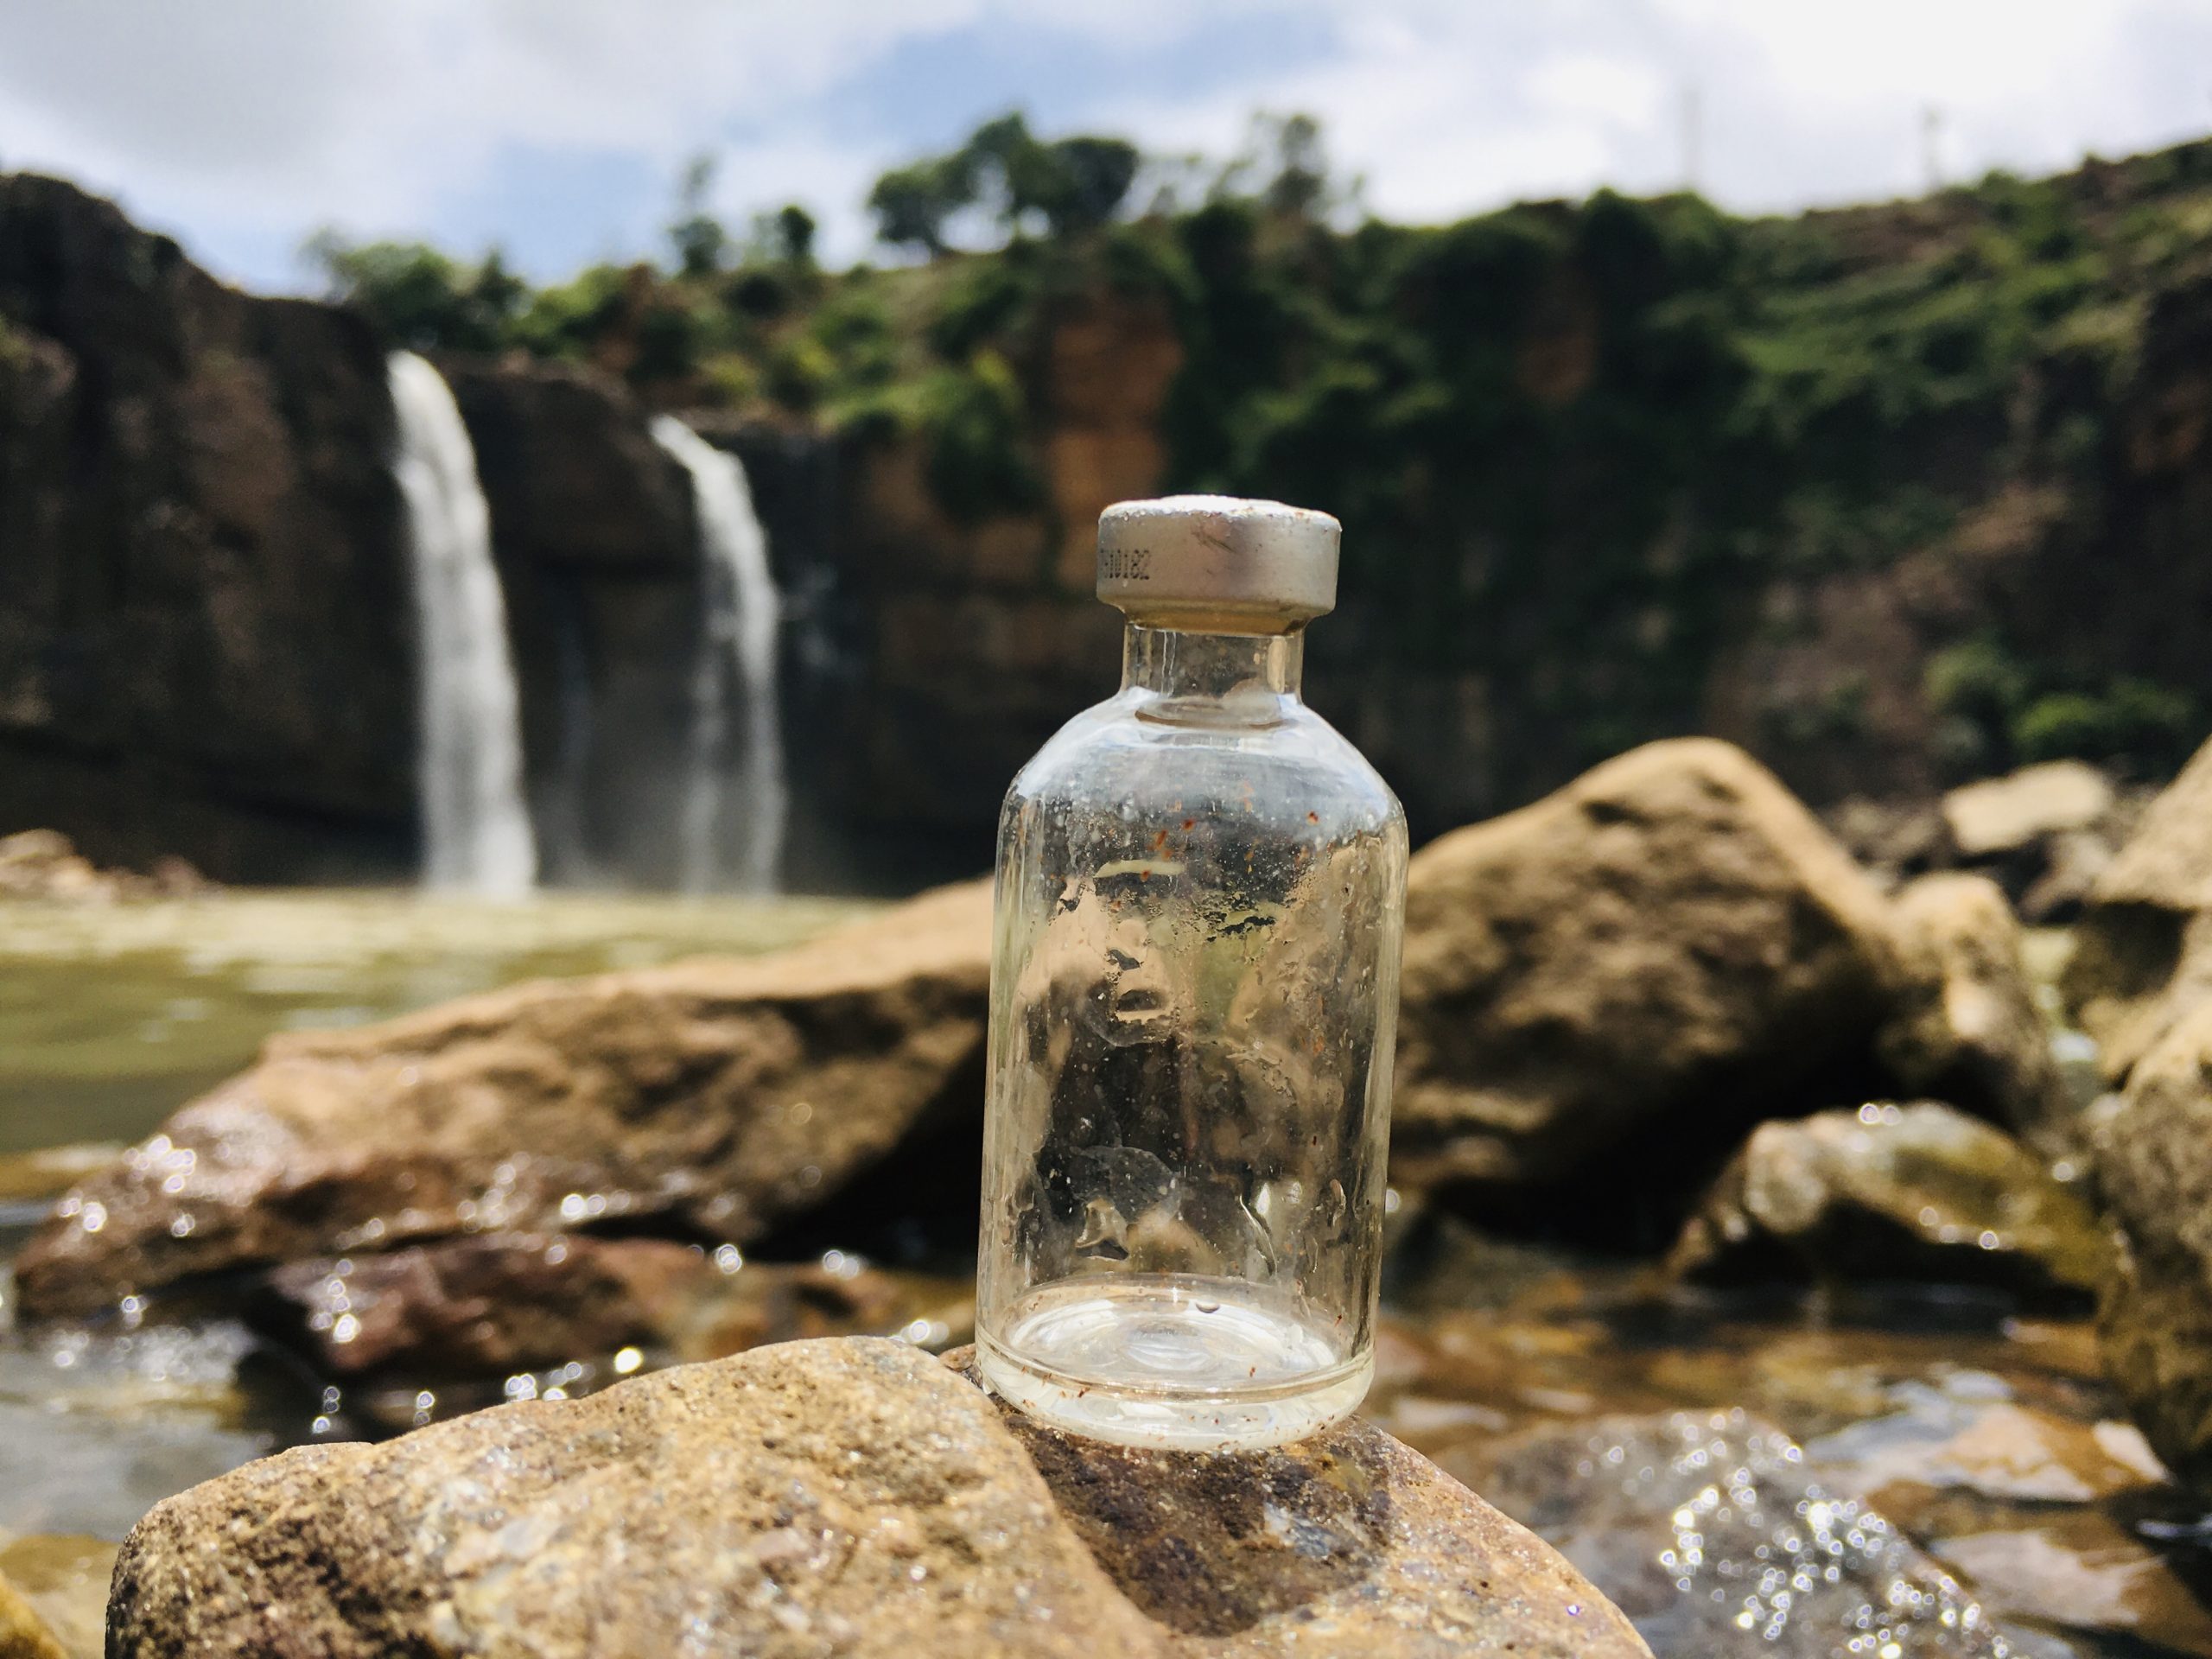 A glass bottle on a rock